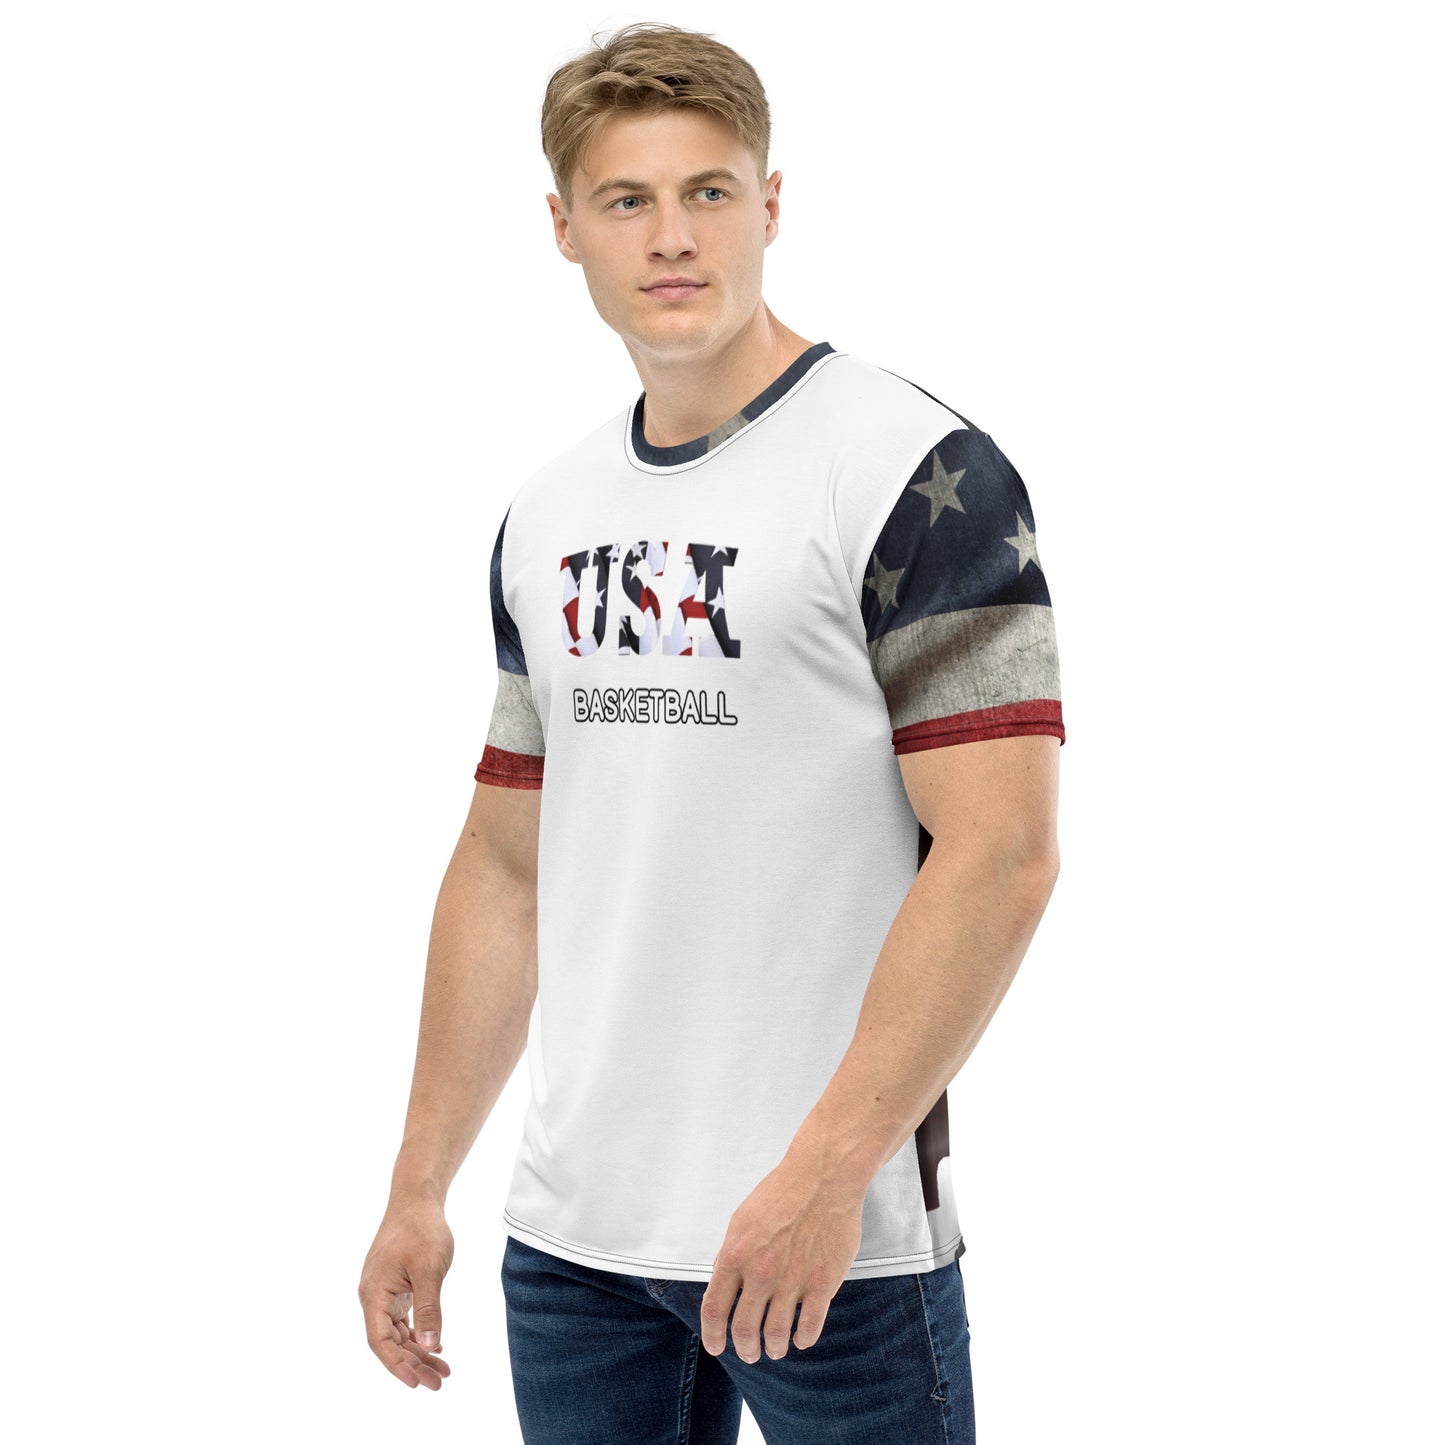 USA Basketball TR 954 t-shirt